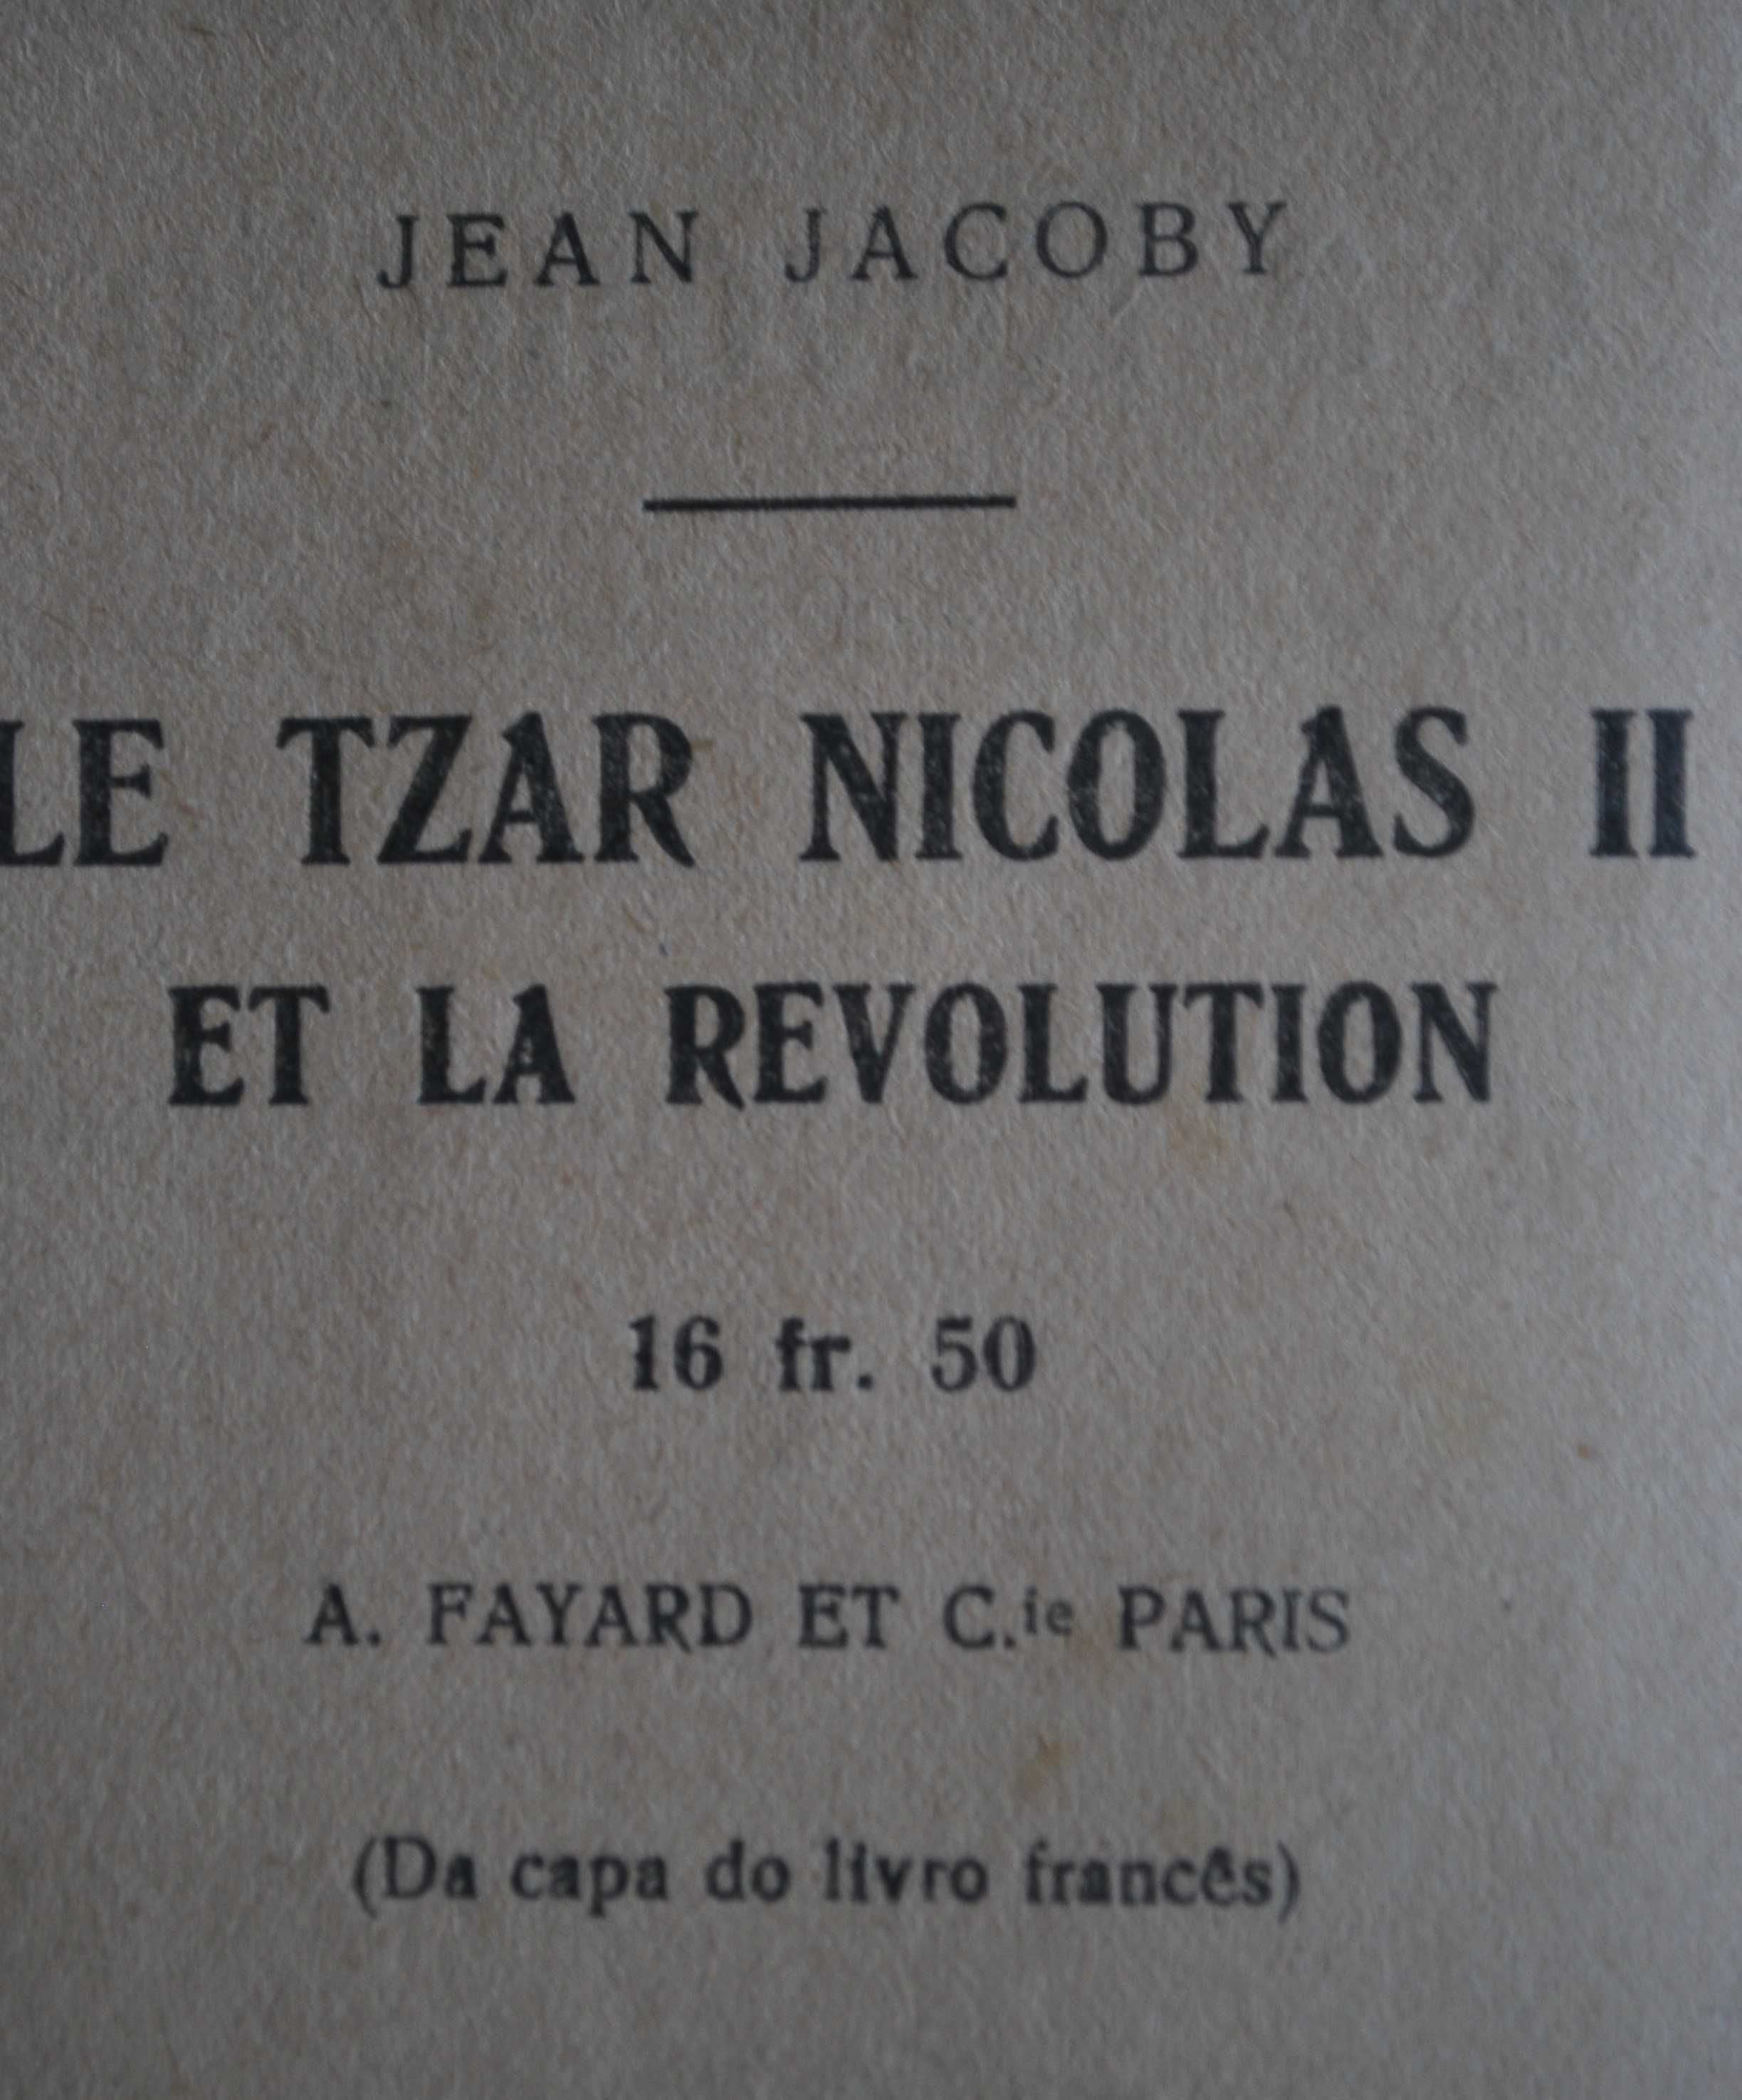 O Czar Nicolau II e A Revolução de Jean Jacoby (1.ª Edição 1933)